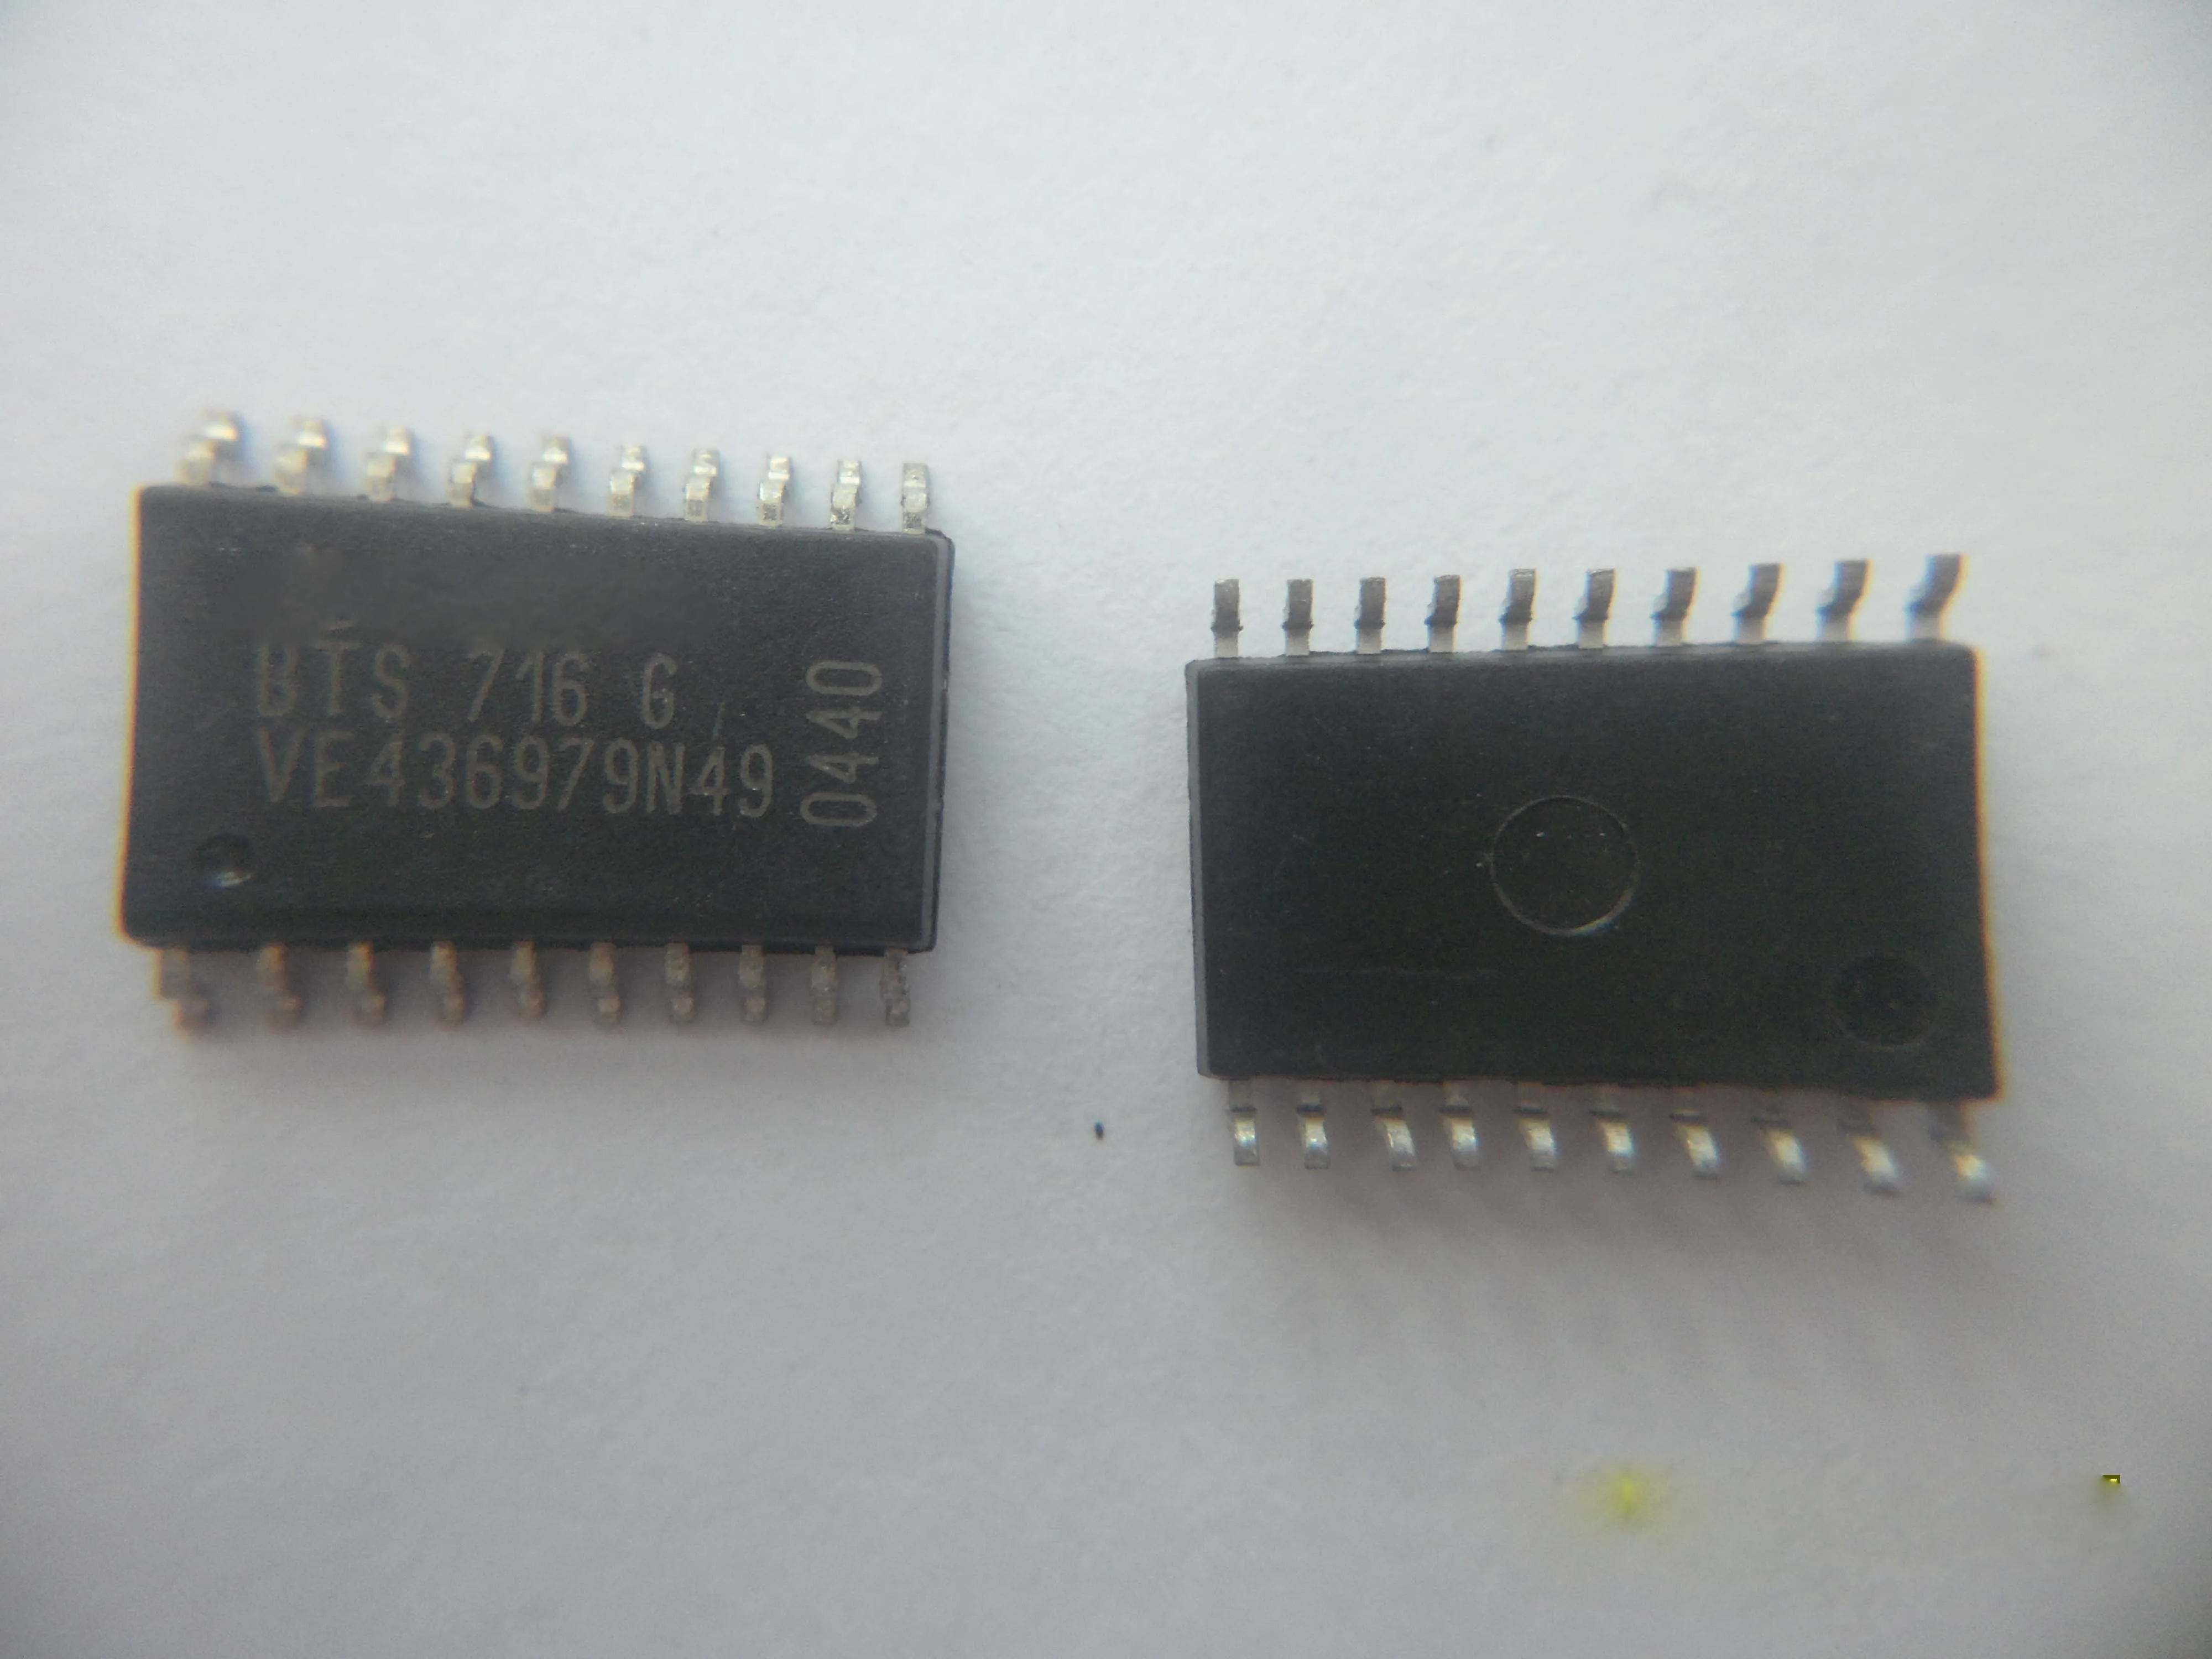 10 шт./лот BTS716G BTS716 BTS7166 лапками углублением SOP-20 для мобильной вычислительной материнскую плату чип для Ni-ssan на электромагнитный клапан драйвер чип